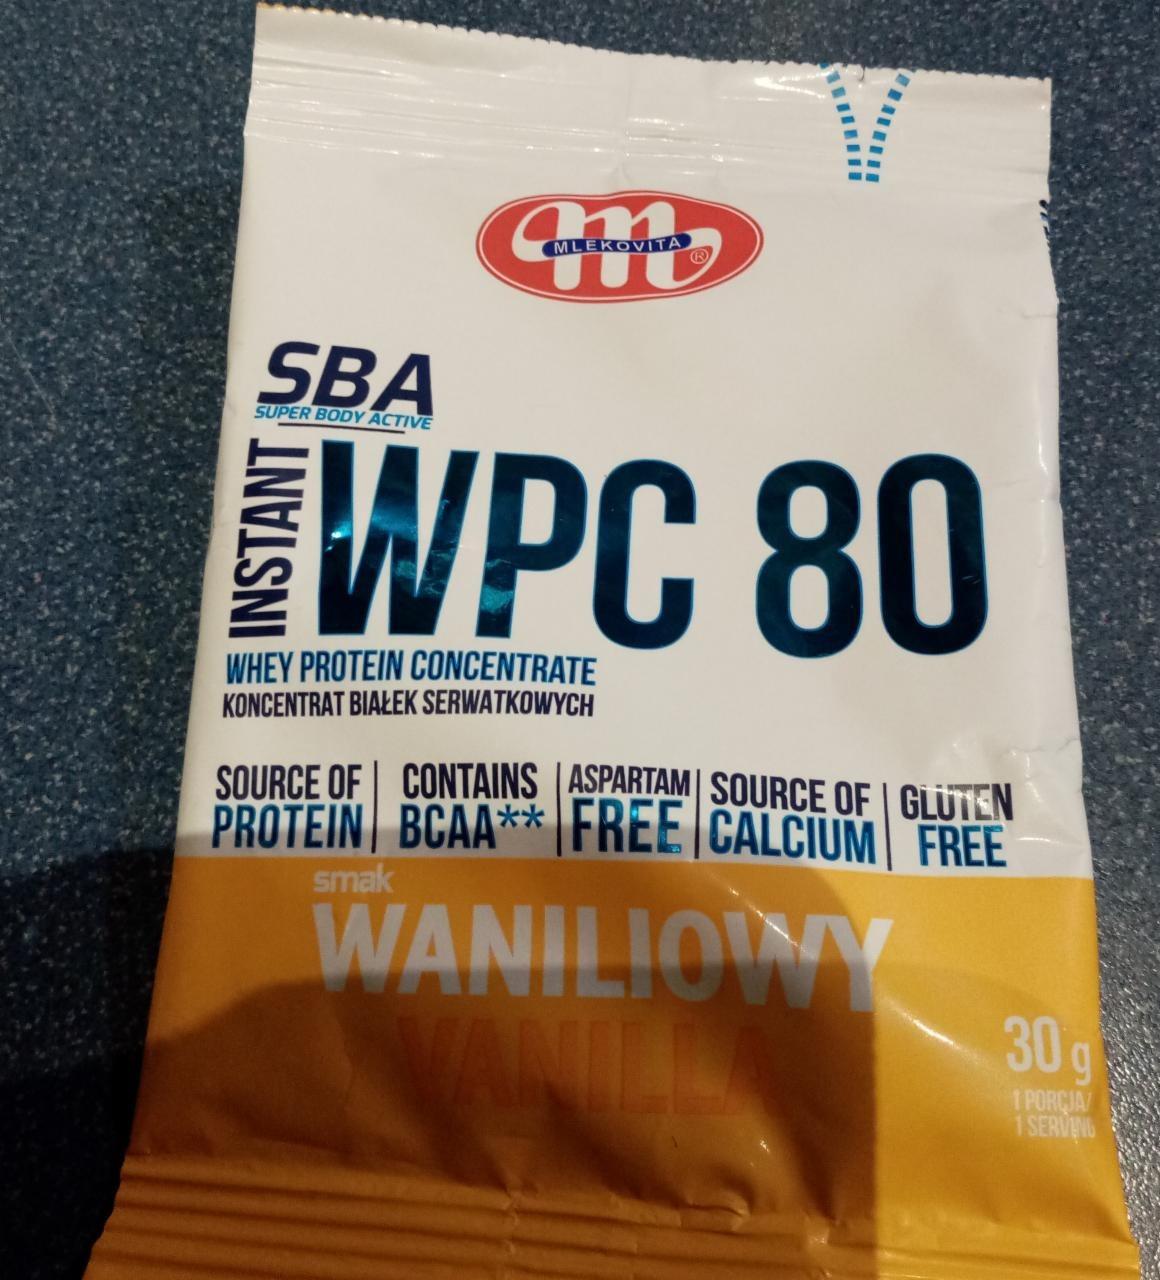 Zdjęcia - SBA Instant WPC 80 whey protein concentrate smak waniliowy Mlekovita